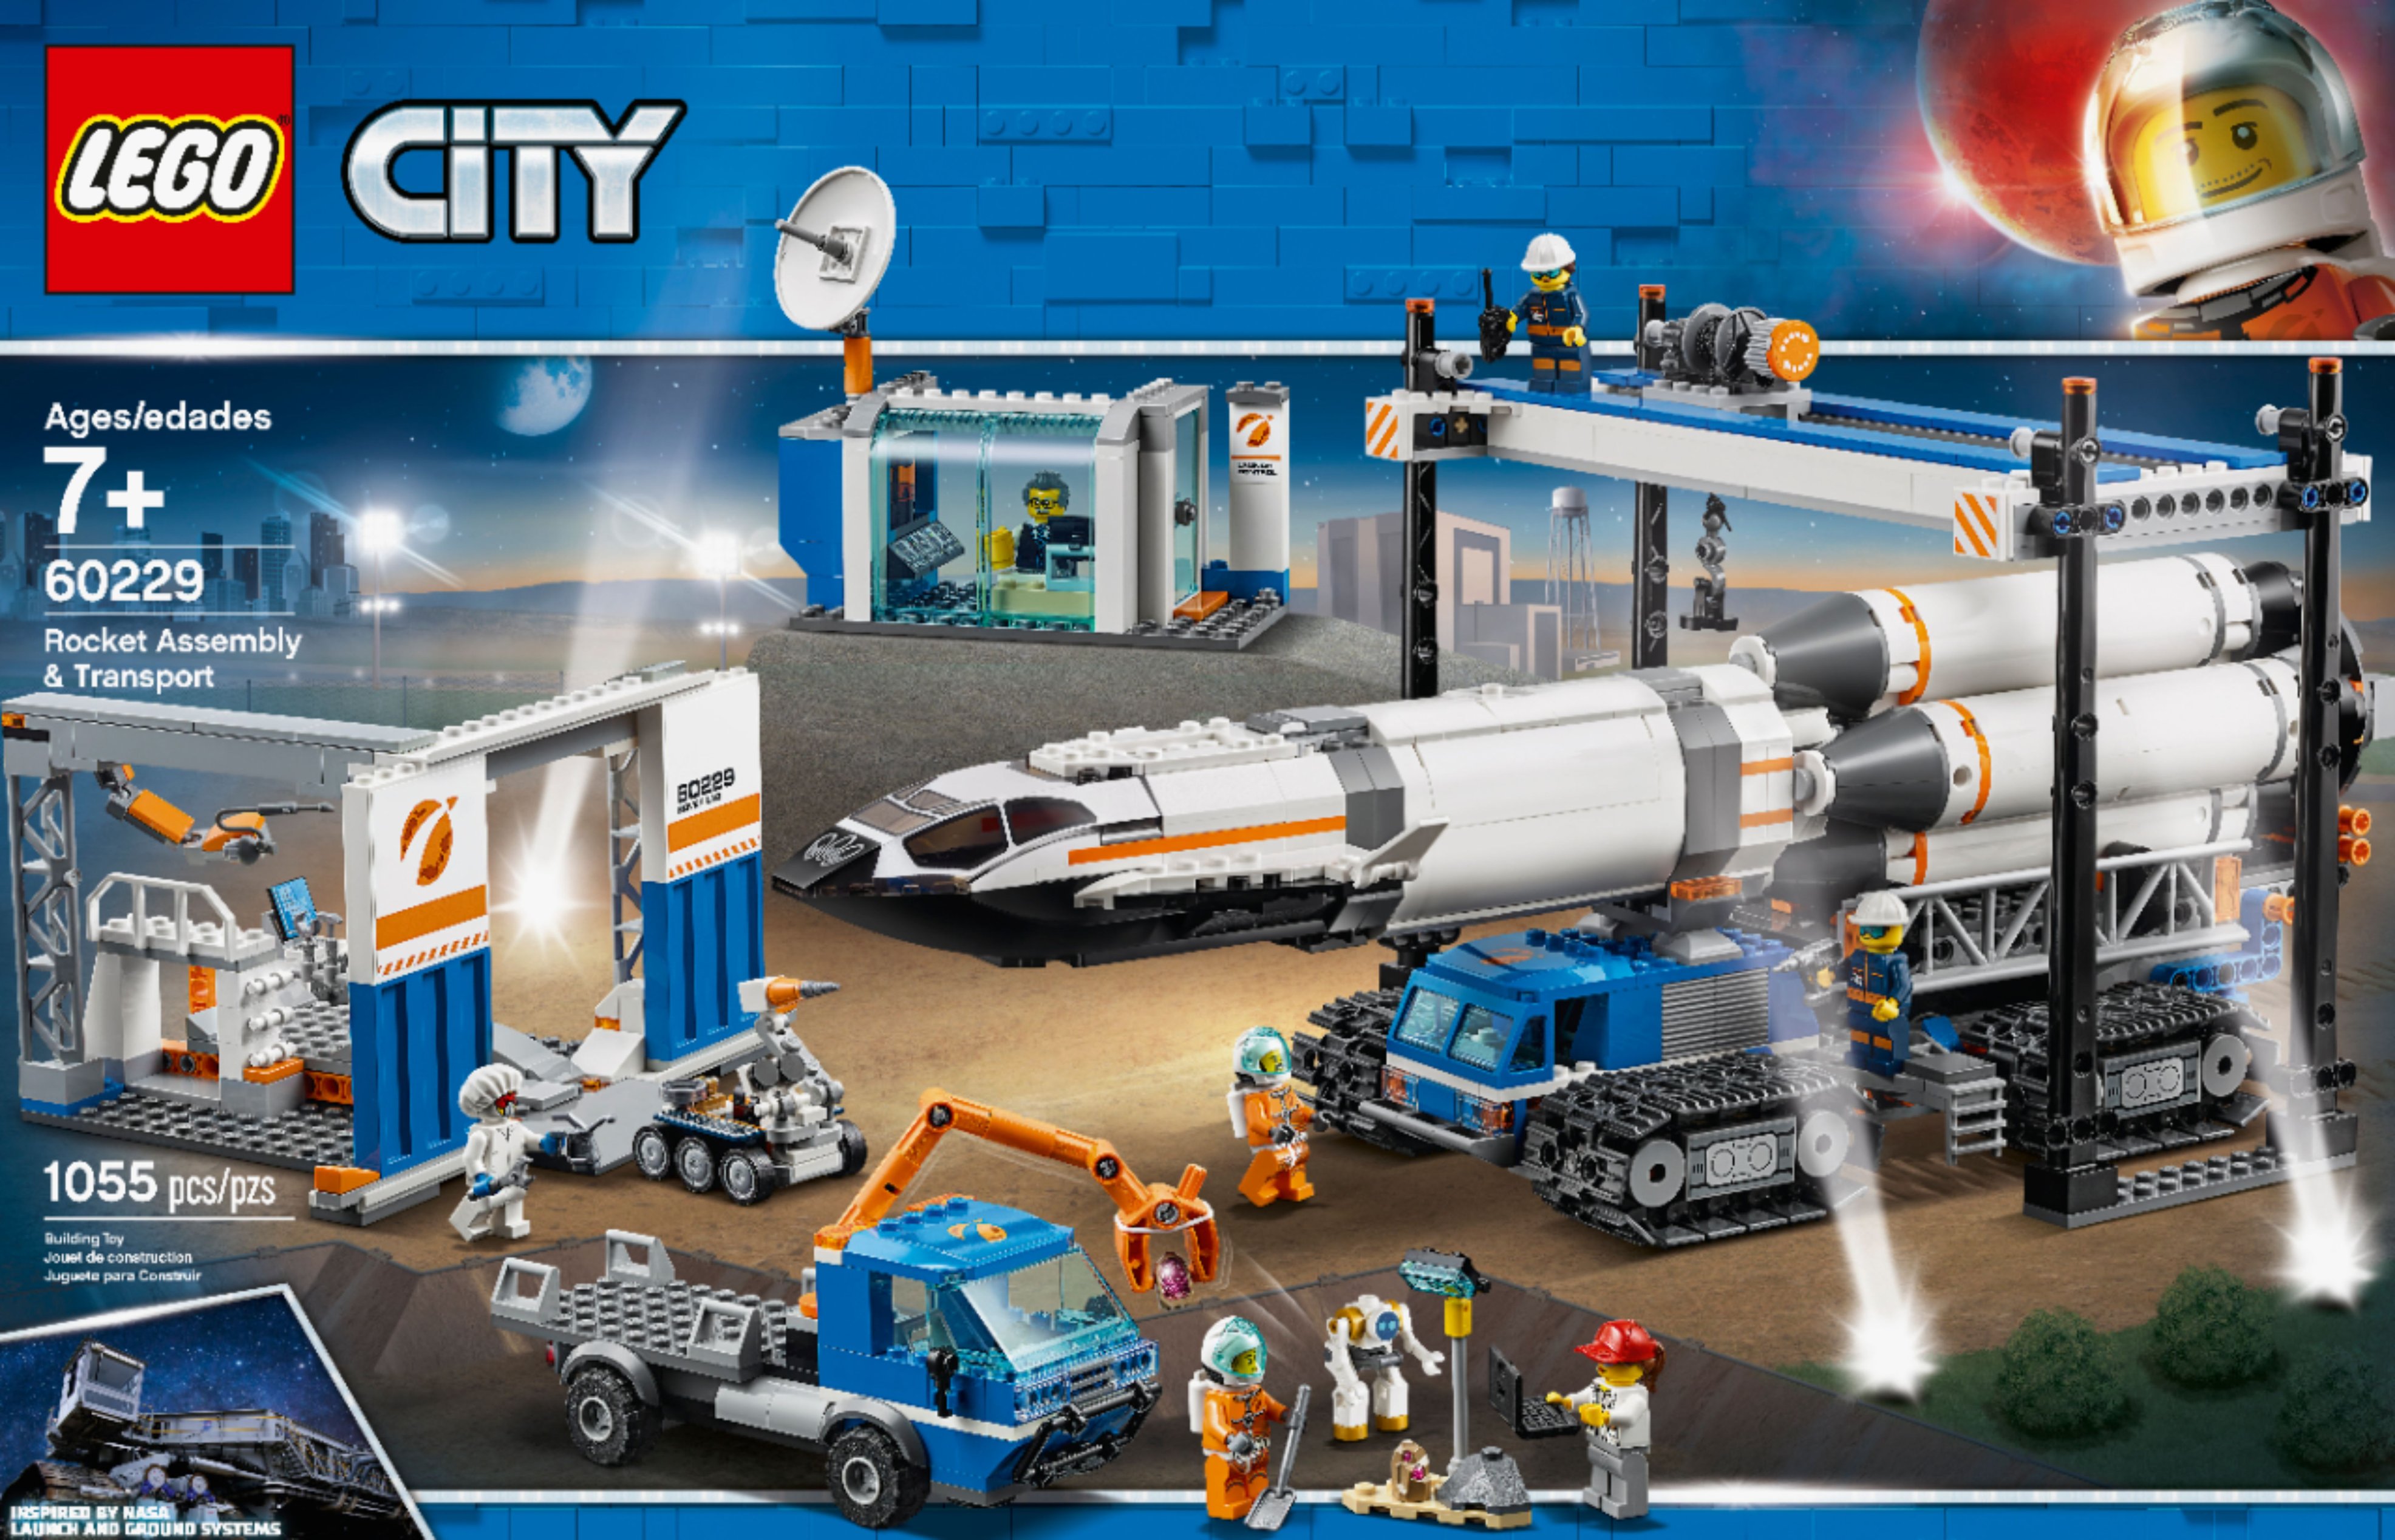 LEGO City Rocket Assembly & Transport 60229 6251738 - Best Buy